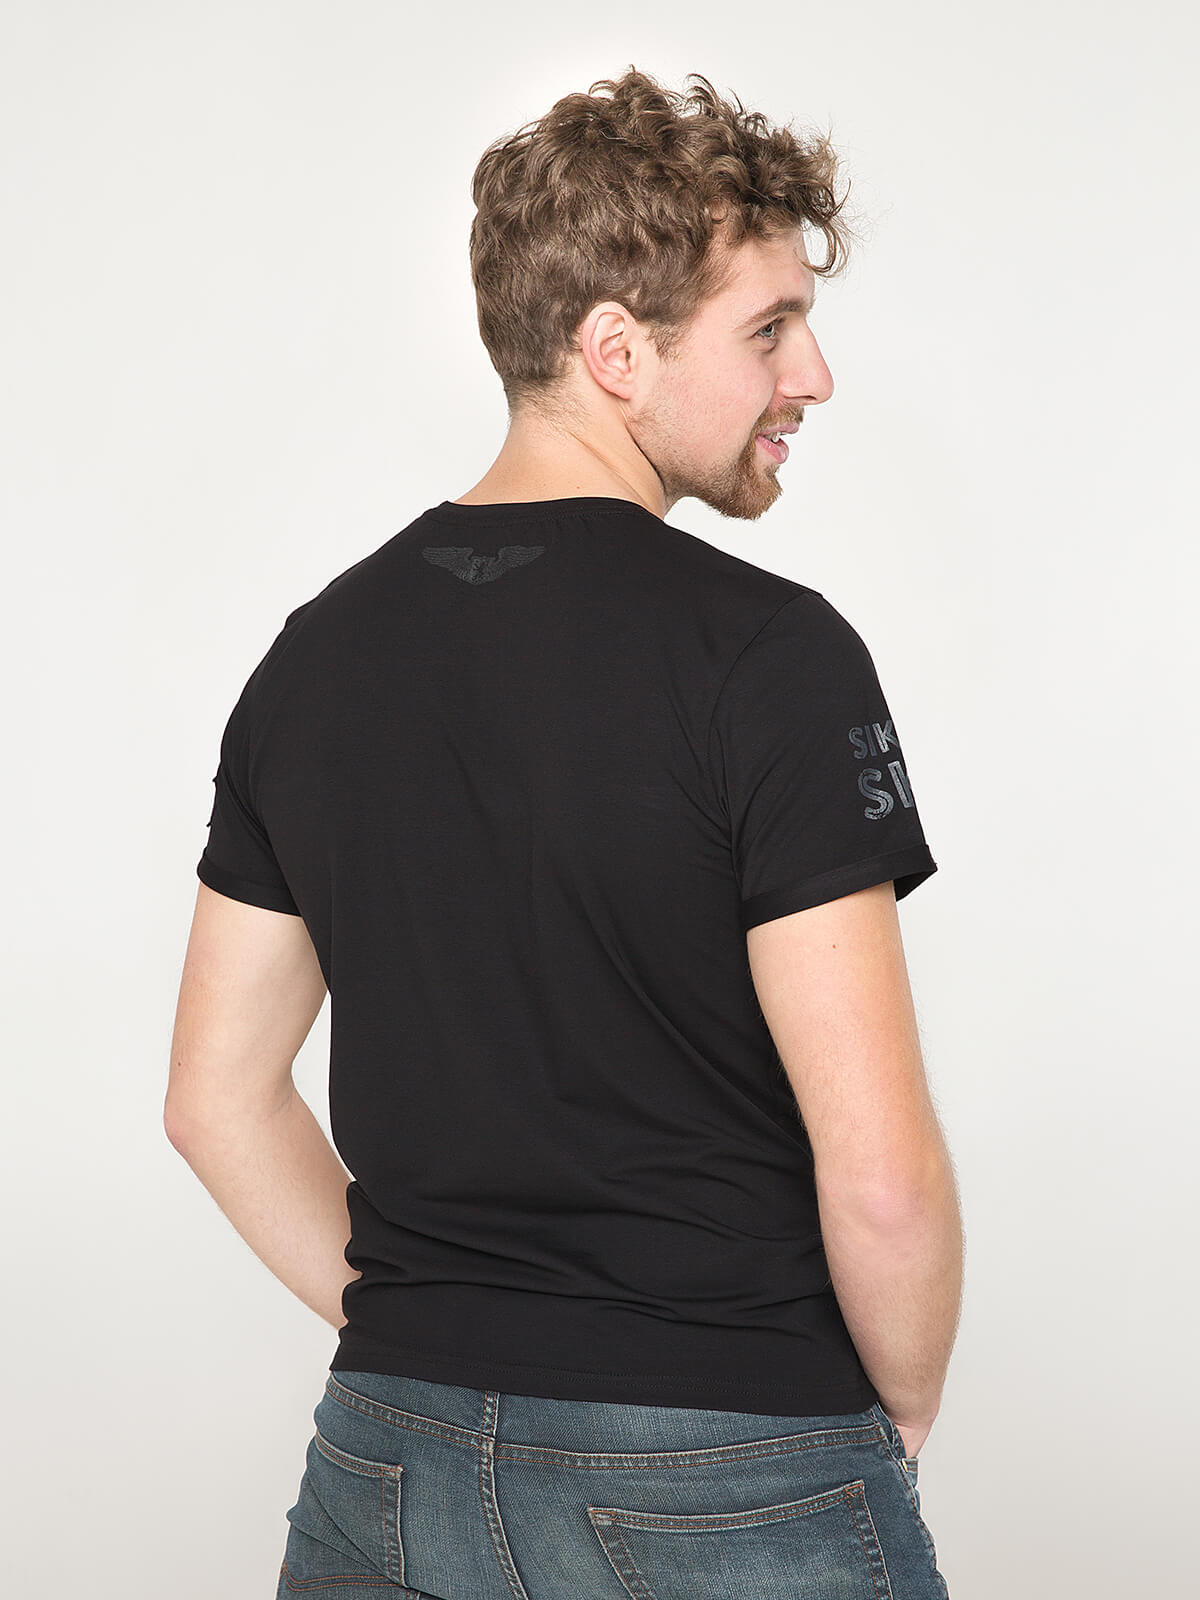 Men's T-Shirt Sikorsky. Color black. 1.